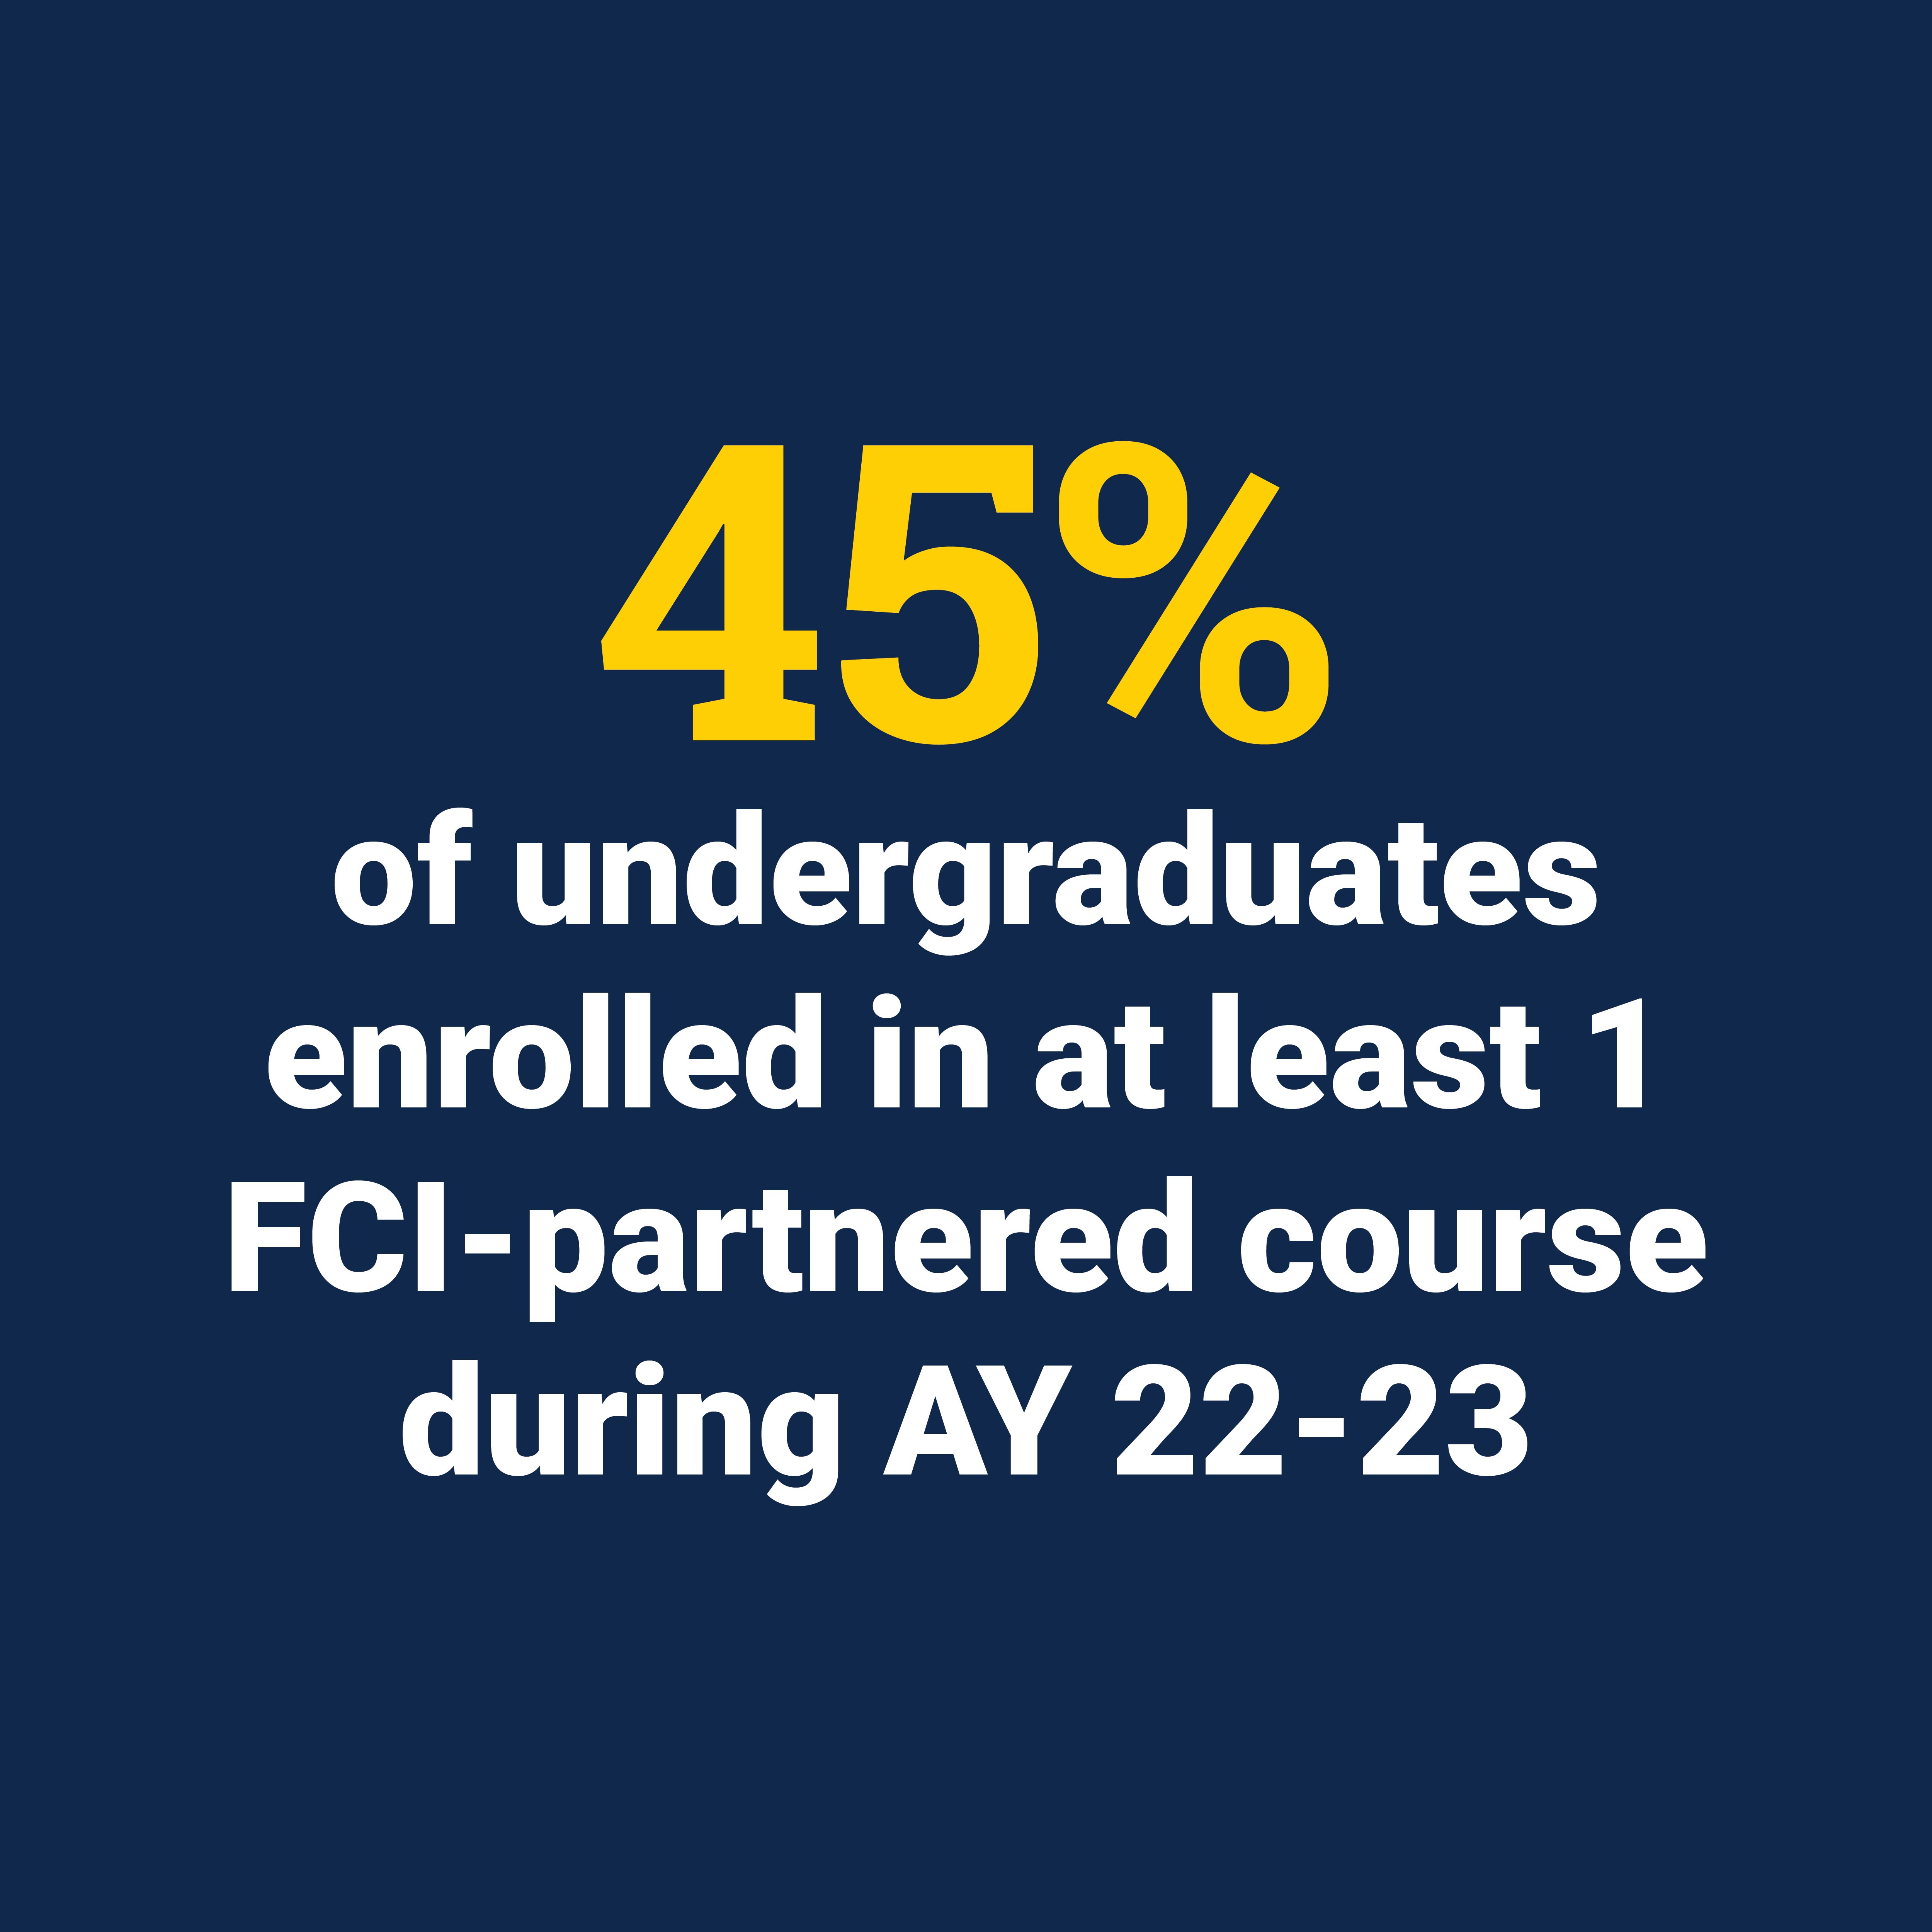 45% of undergraduates enrolled in at least 1 FCI-partnered course during AY 22-23